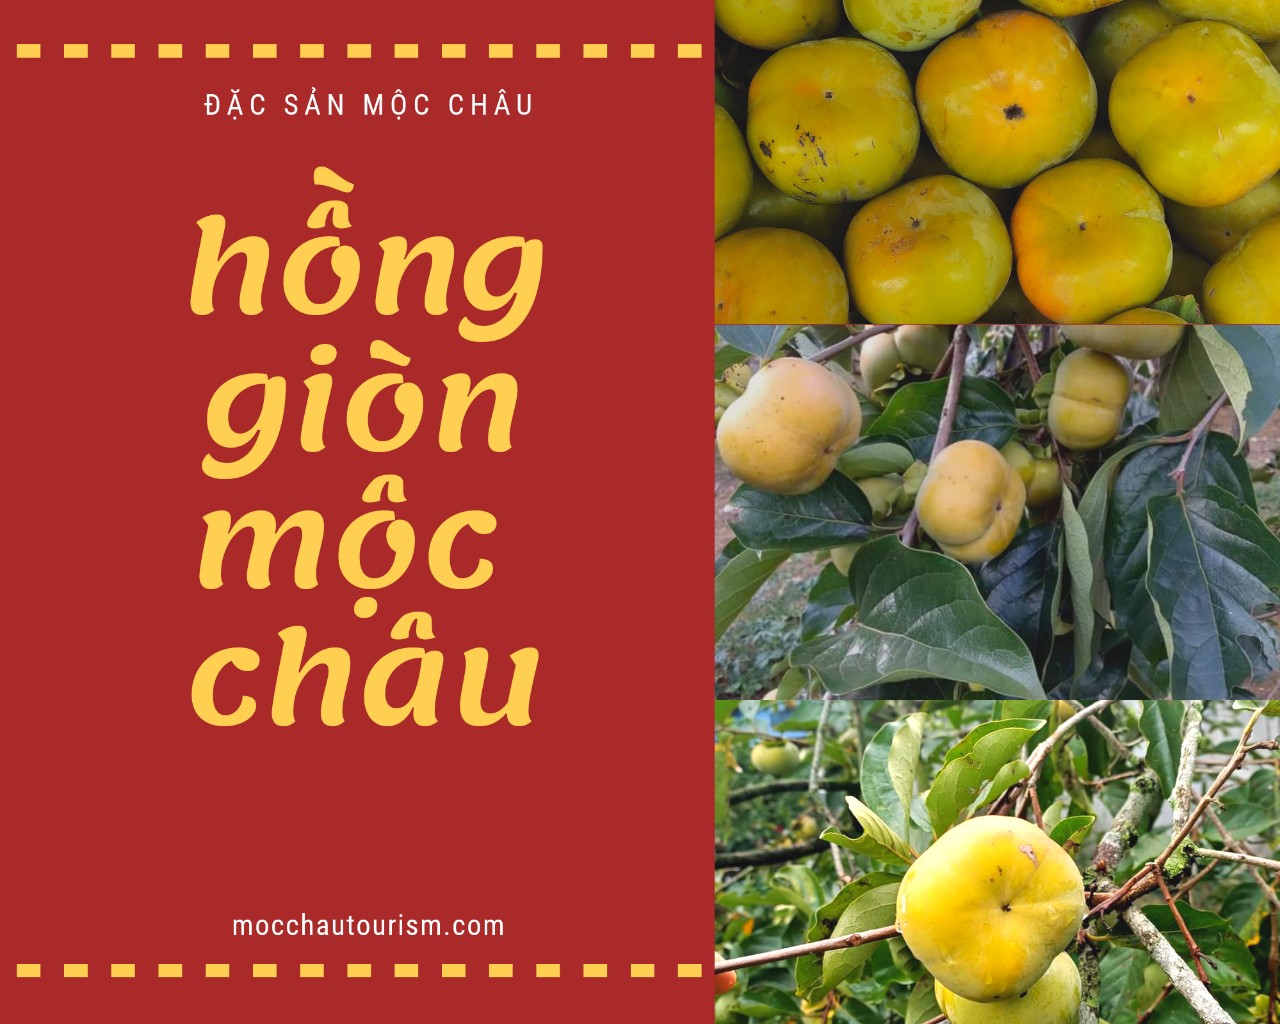 hong gion moc chau (1)